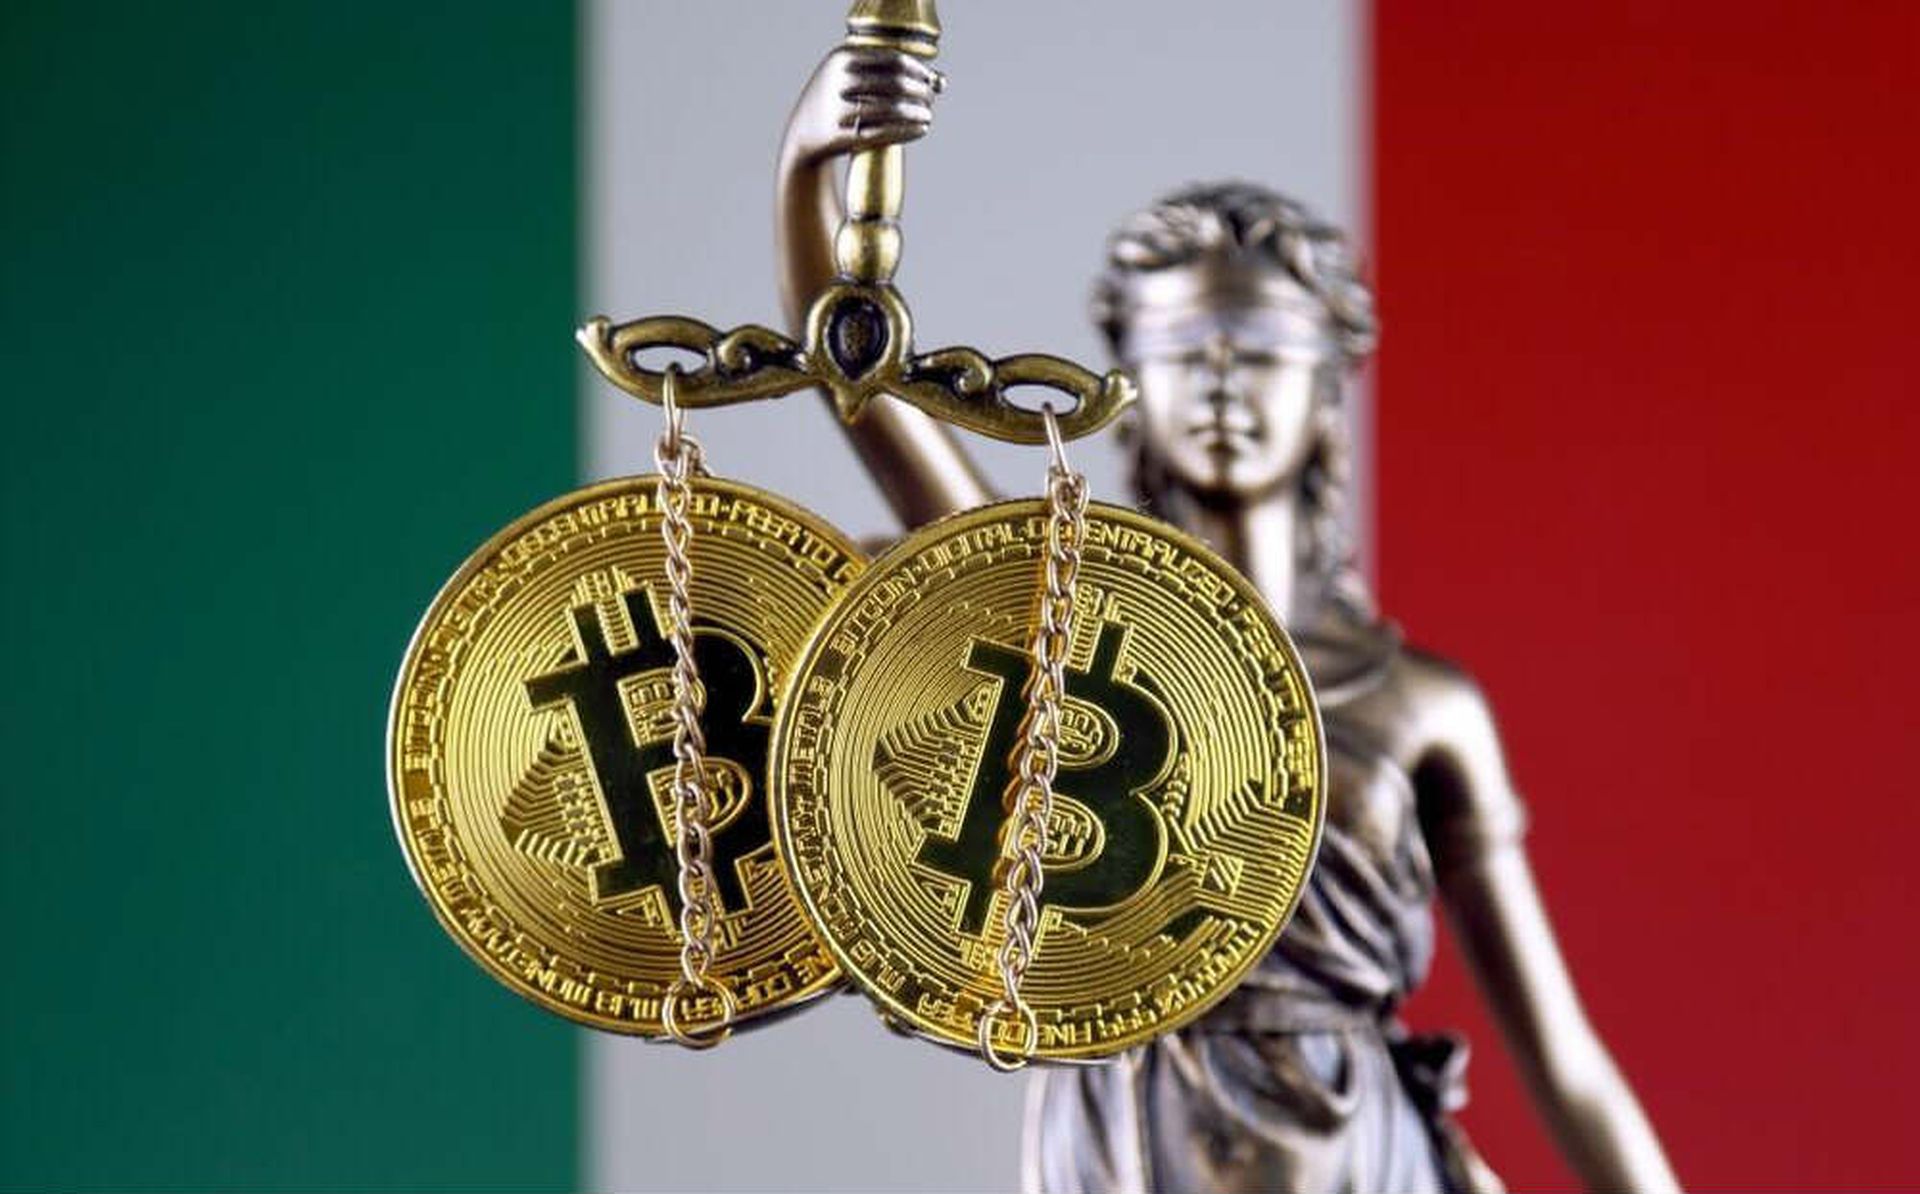 %26 La taxe italienne sur la cryptographie commencera à être imposée à partir de 2023